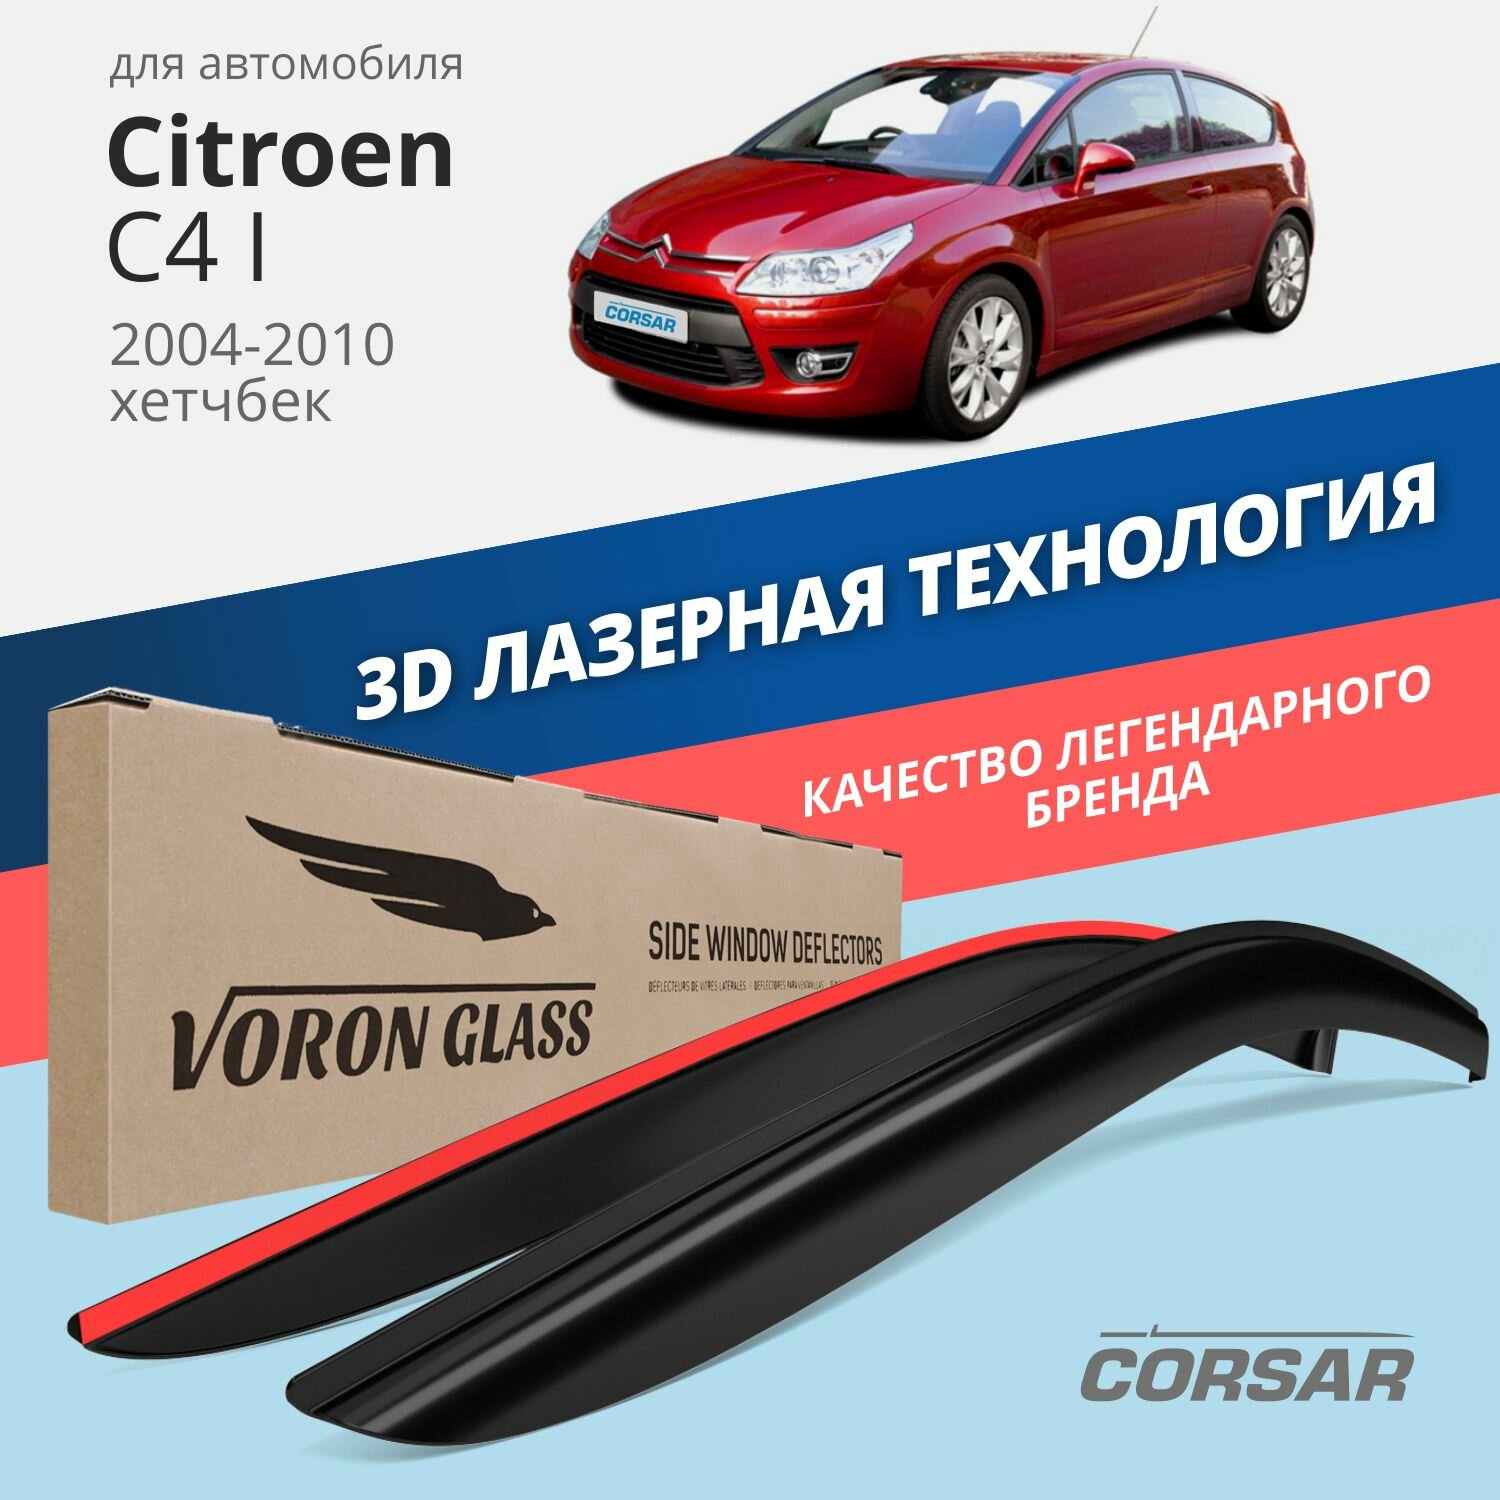 Дефлекторы окон Voron Glass серия Corsar для Citroen C4 I 2004-2010 /хэтчбек накладные 2 шт.